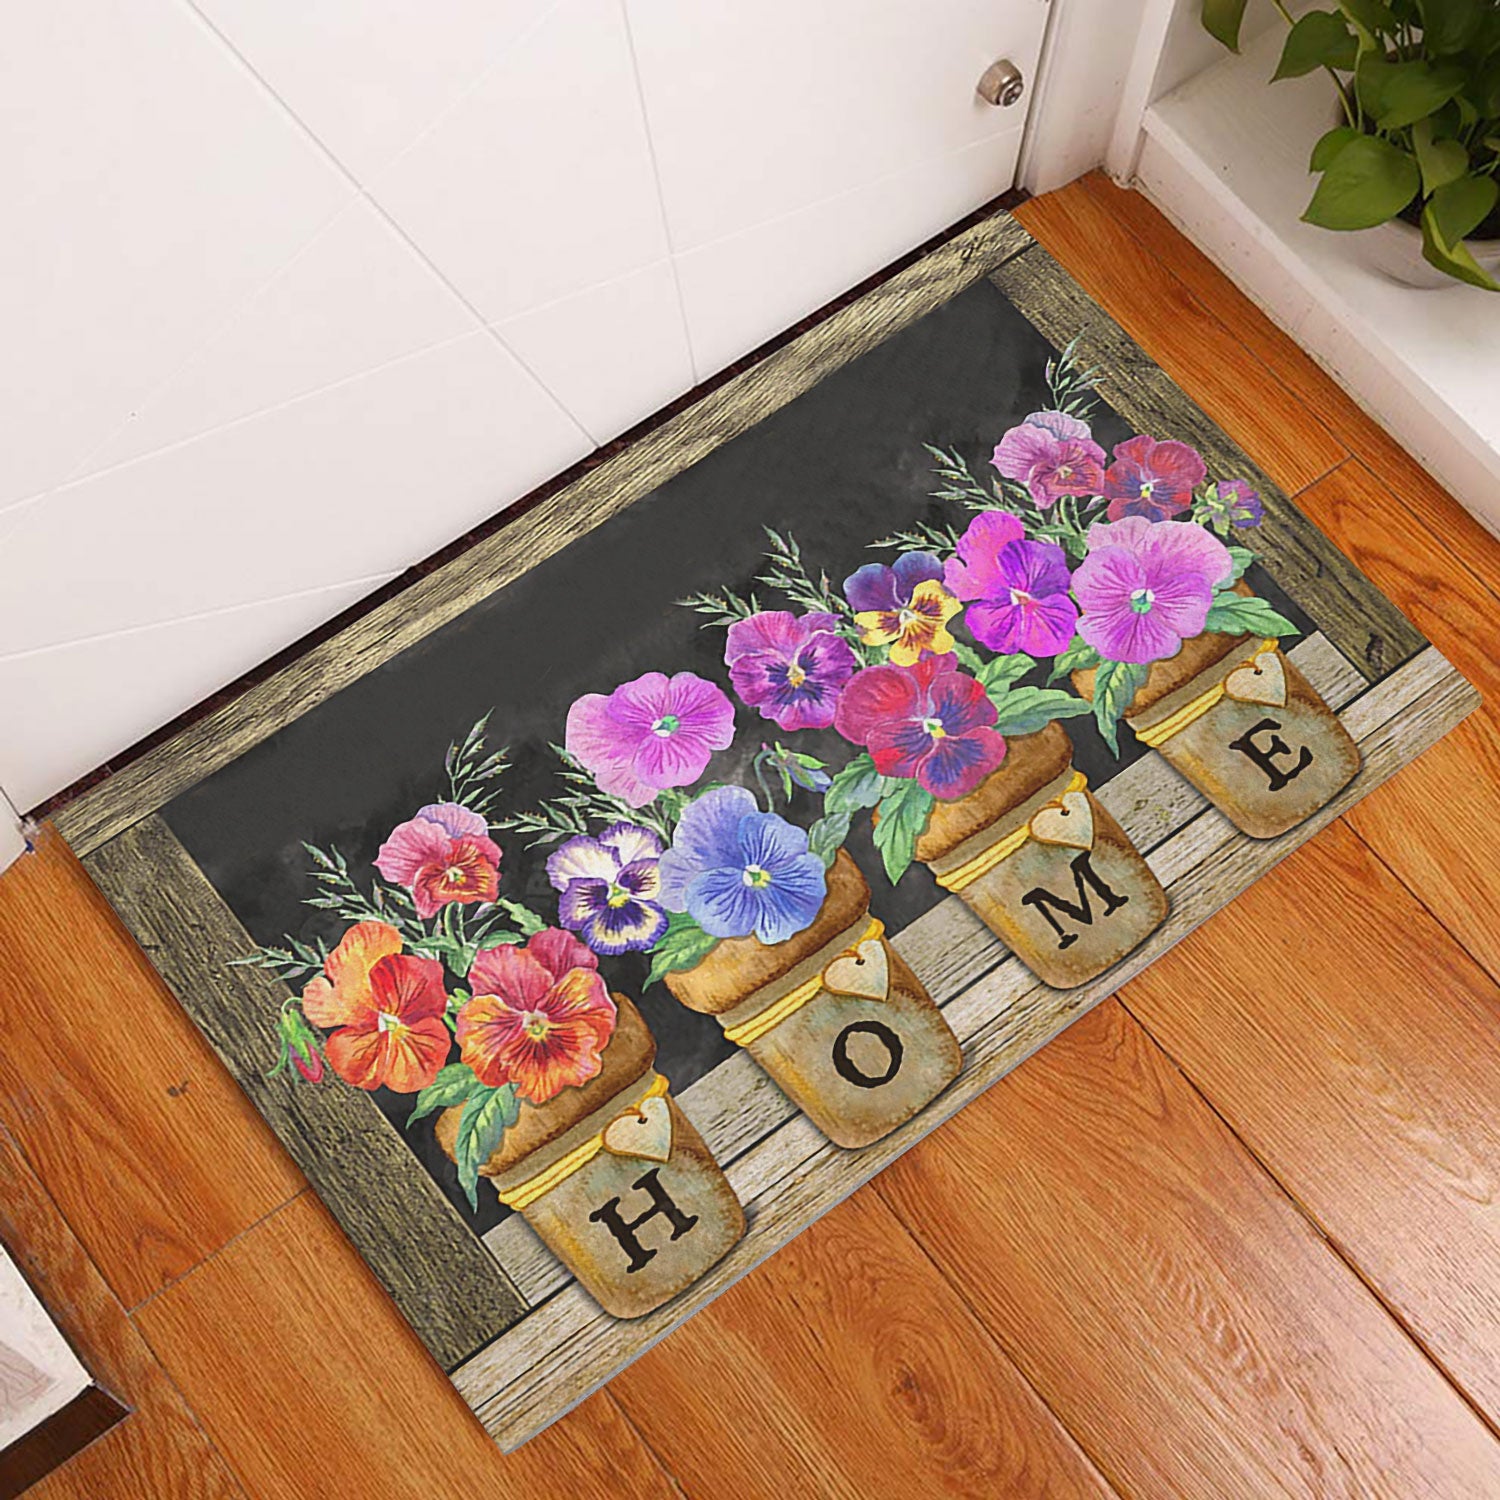 Doormats - Outdoor & Garden - Home